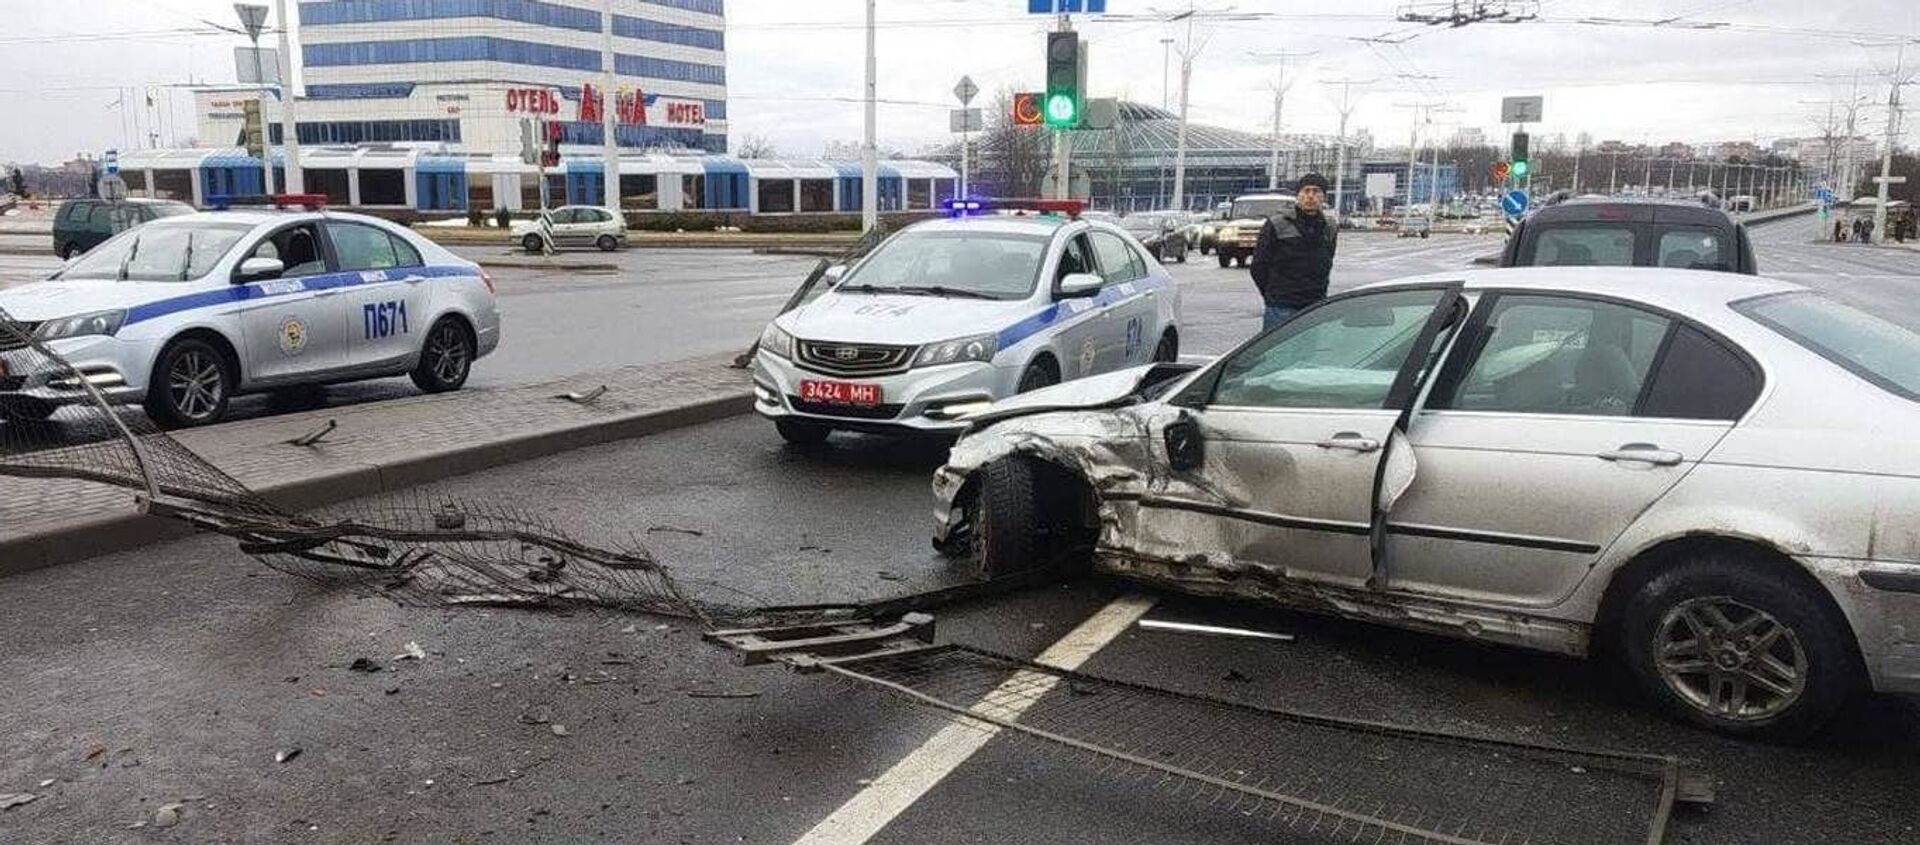 Пьяный водитель на BMW пробил заграждение и врезался в другую машину - Sputnik Беларусь, 1920, 28.02.2021